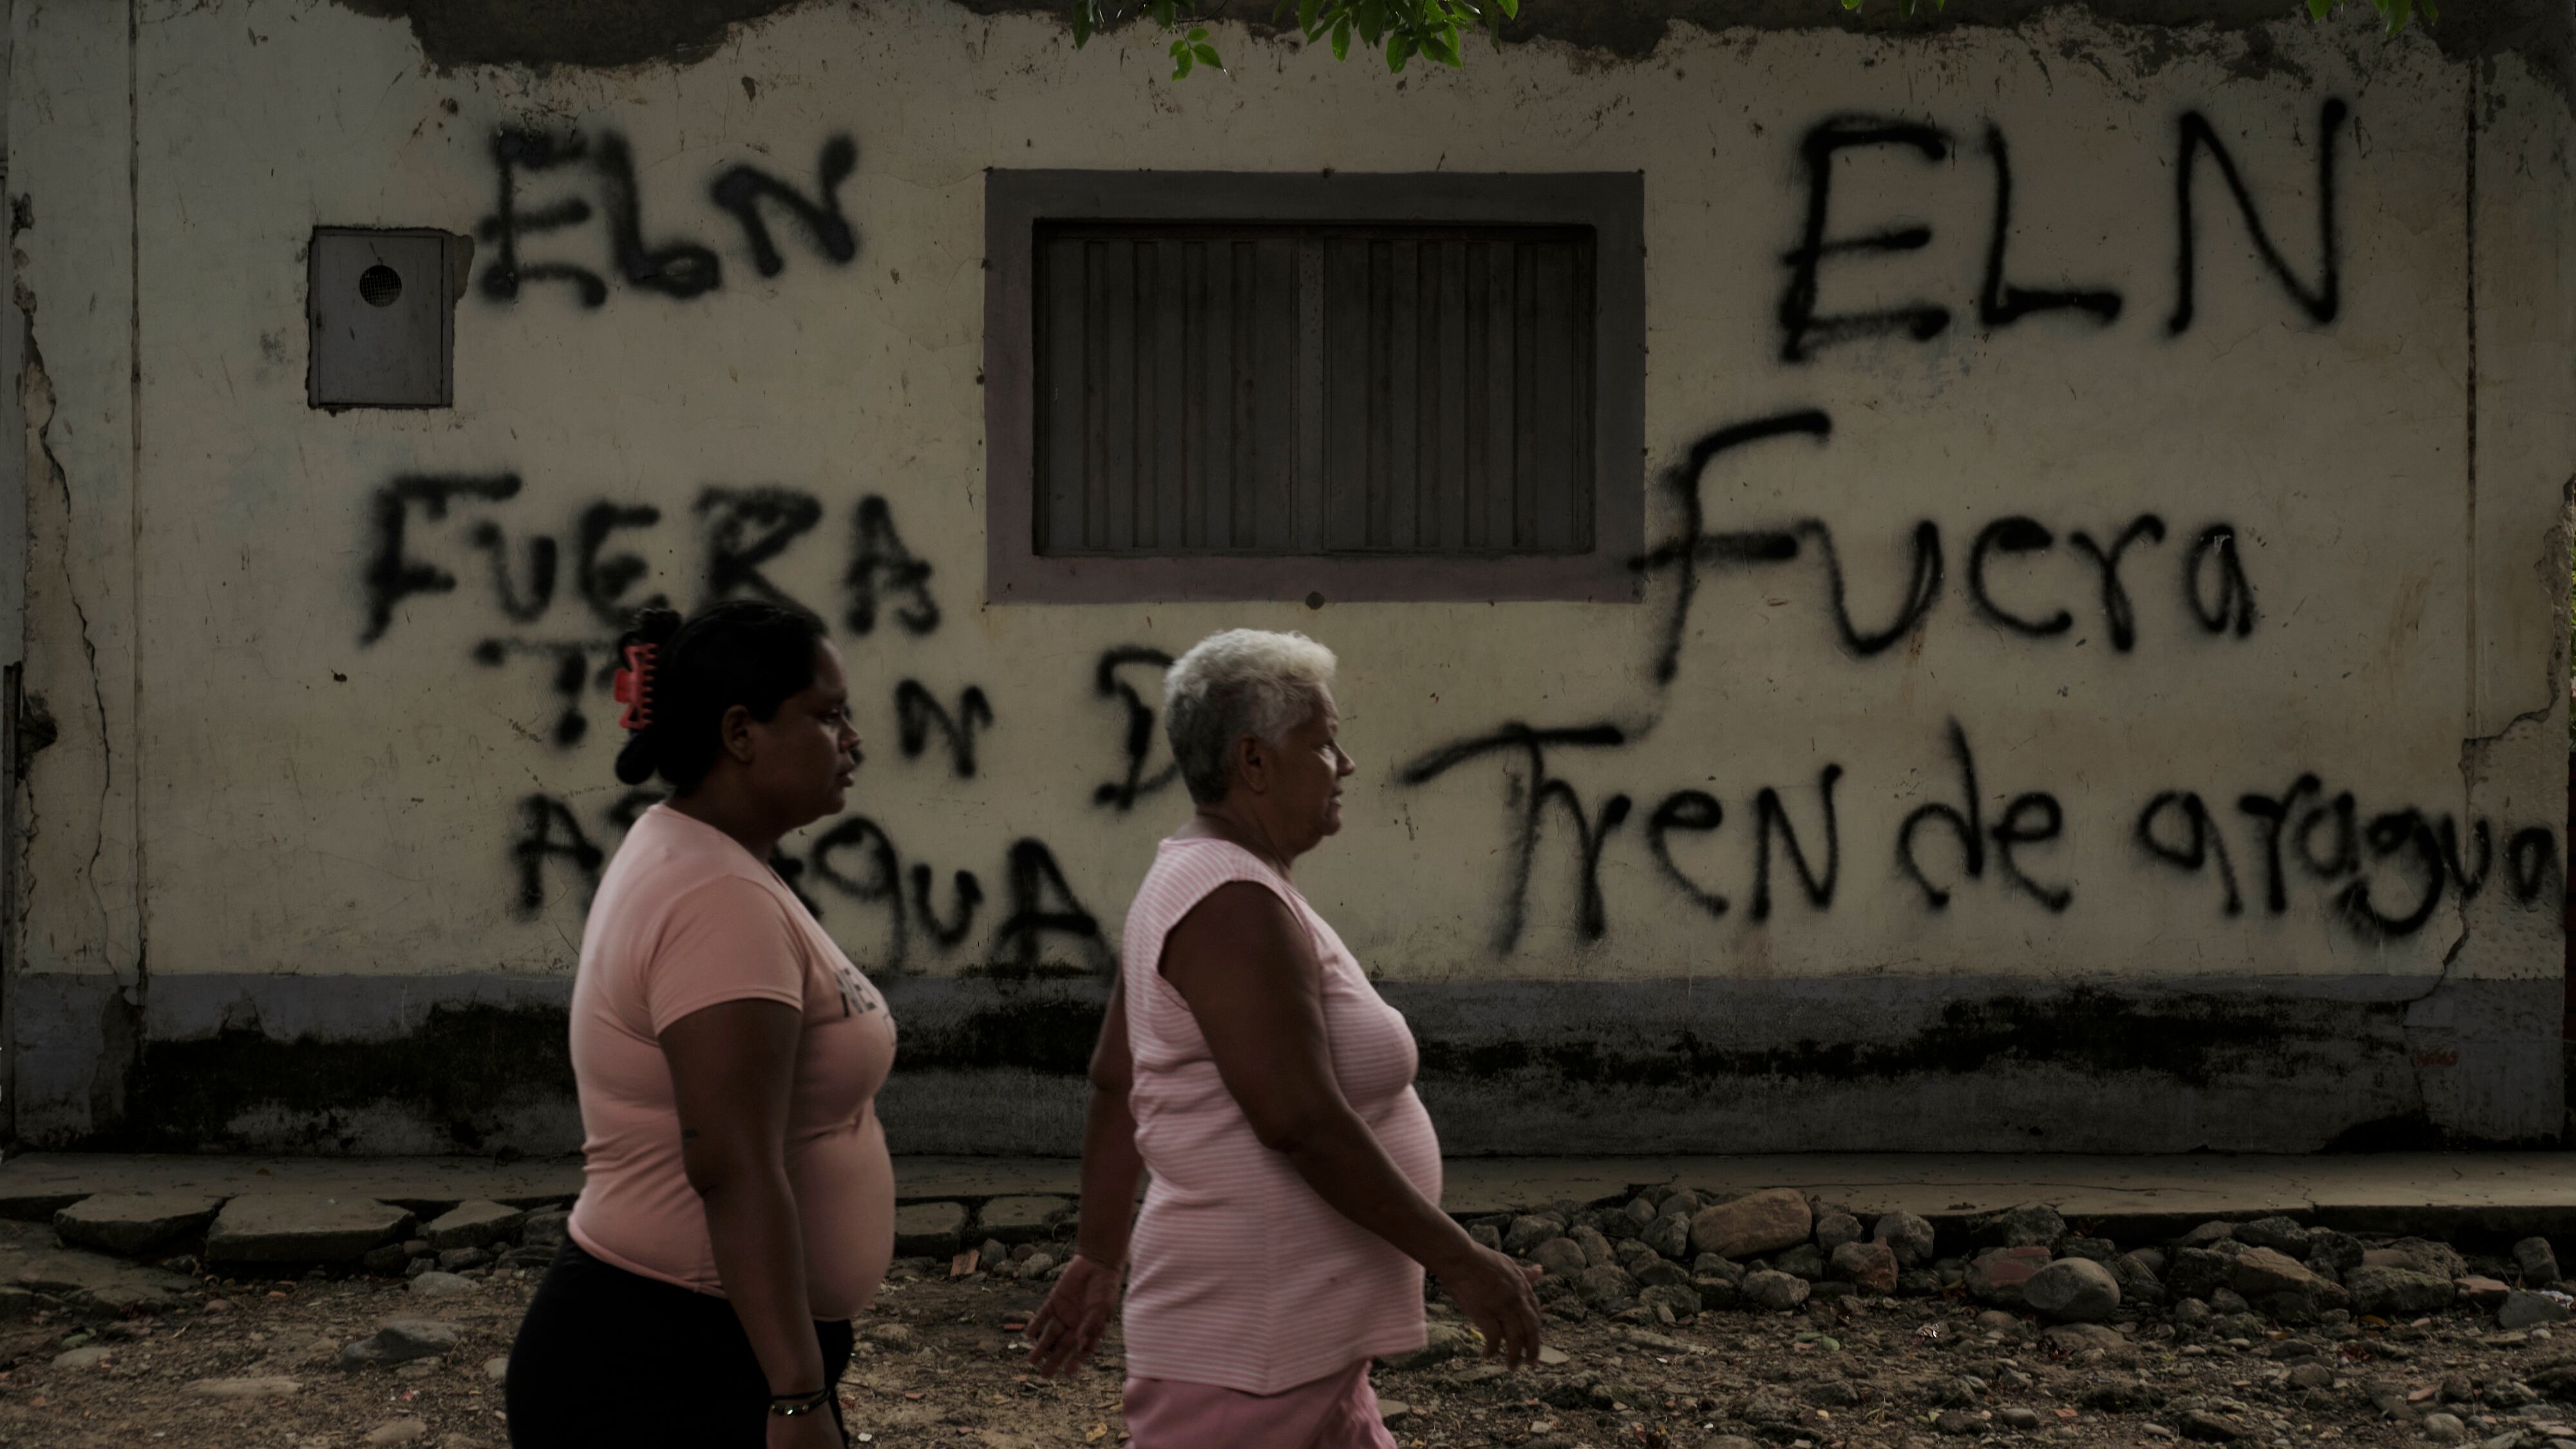 Mujeres caminan frente a un graffiti alusivo al Tren de Aragua en Cúcuta,cerca de la frontera entre Venezuela y Colombia, en marzo de 2023.